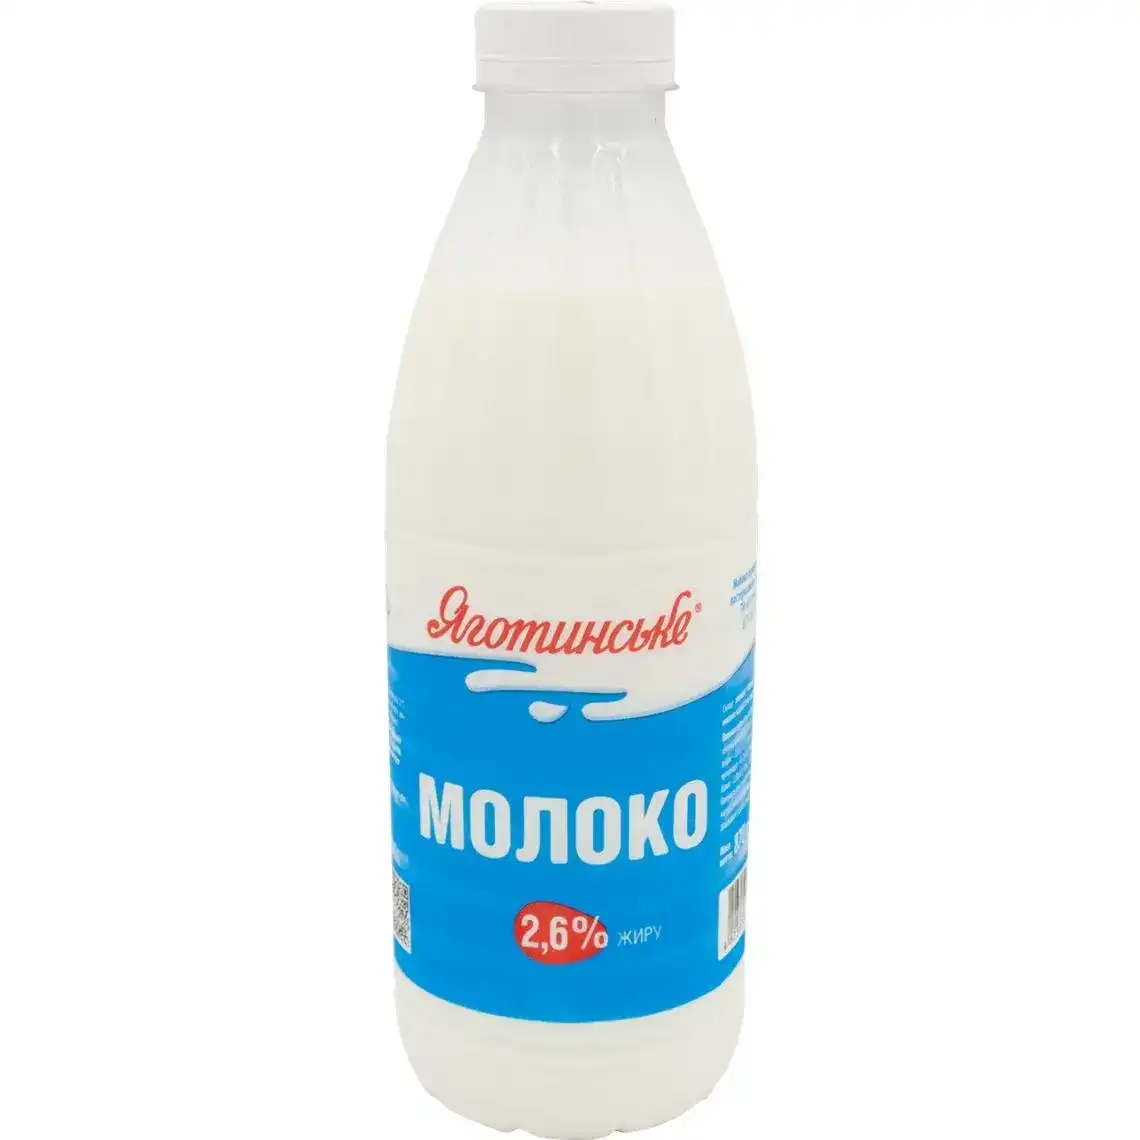 Молоко Яготинське 2.6% пастеризованное в бутылке 870 г